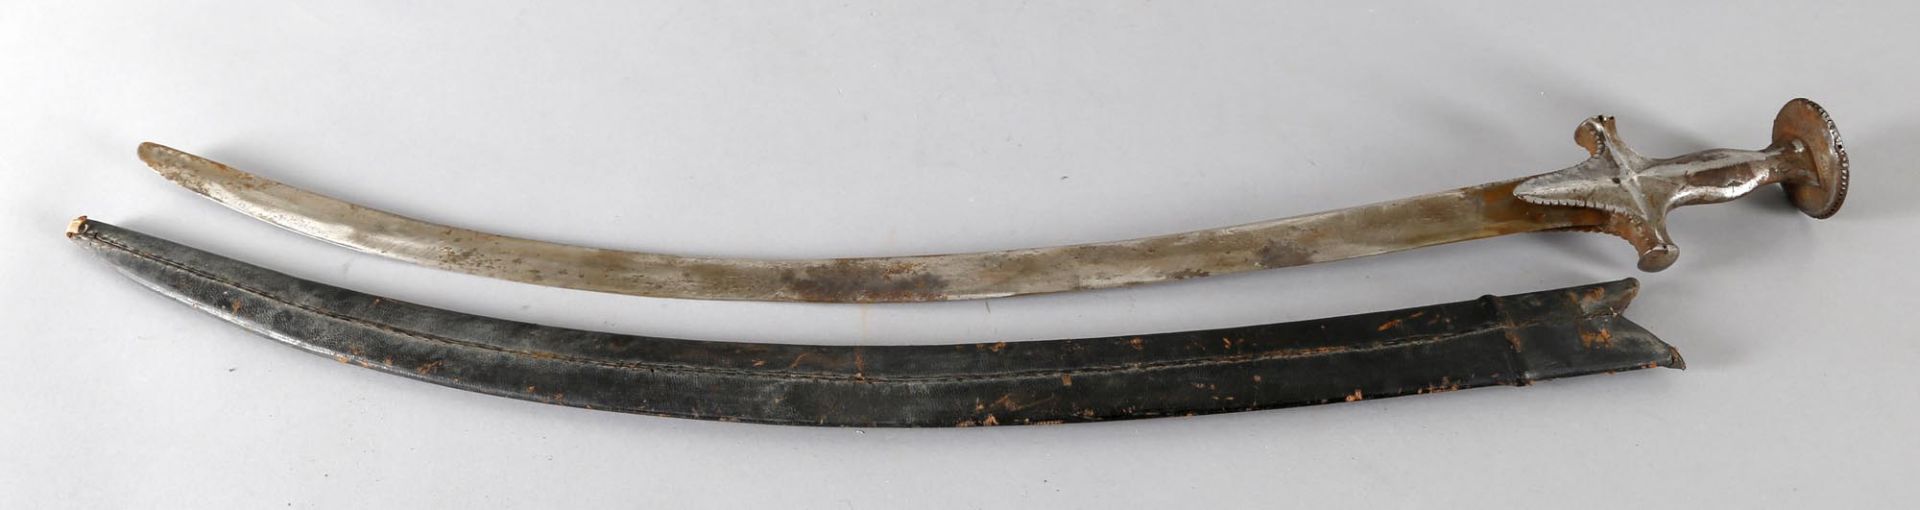 Tulwar, Indien, 19. Jh.Gefäß aus Eisen, gebogene Rückenklinge mit eingelegter Halbmondmarke (in